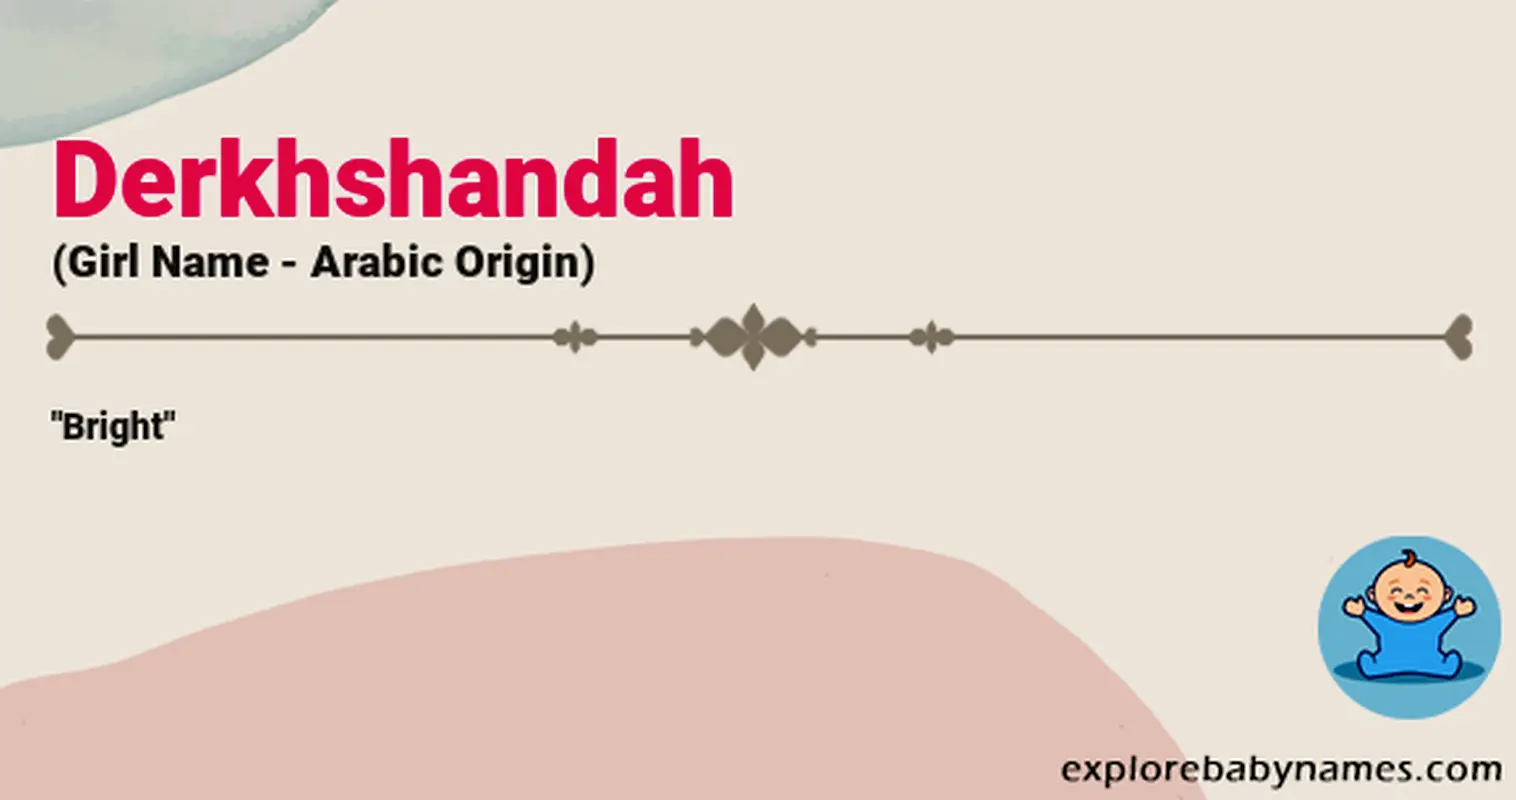 Meaning of Derkhshandah